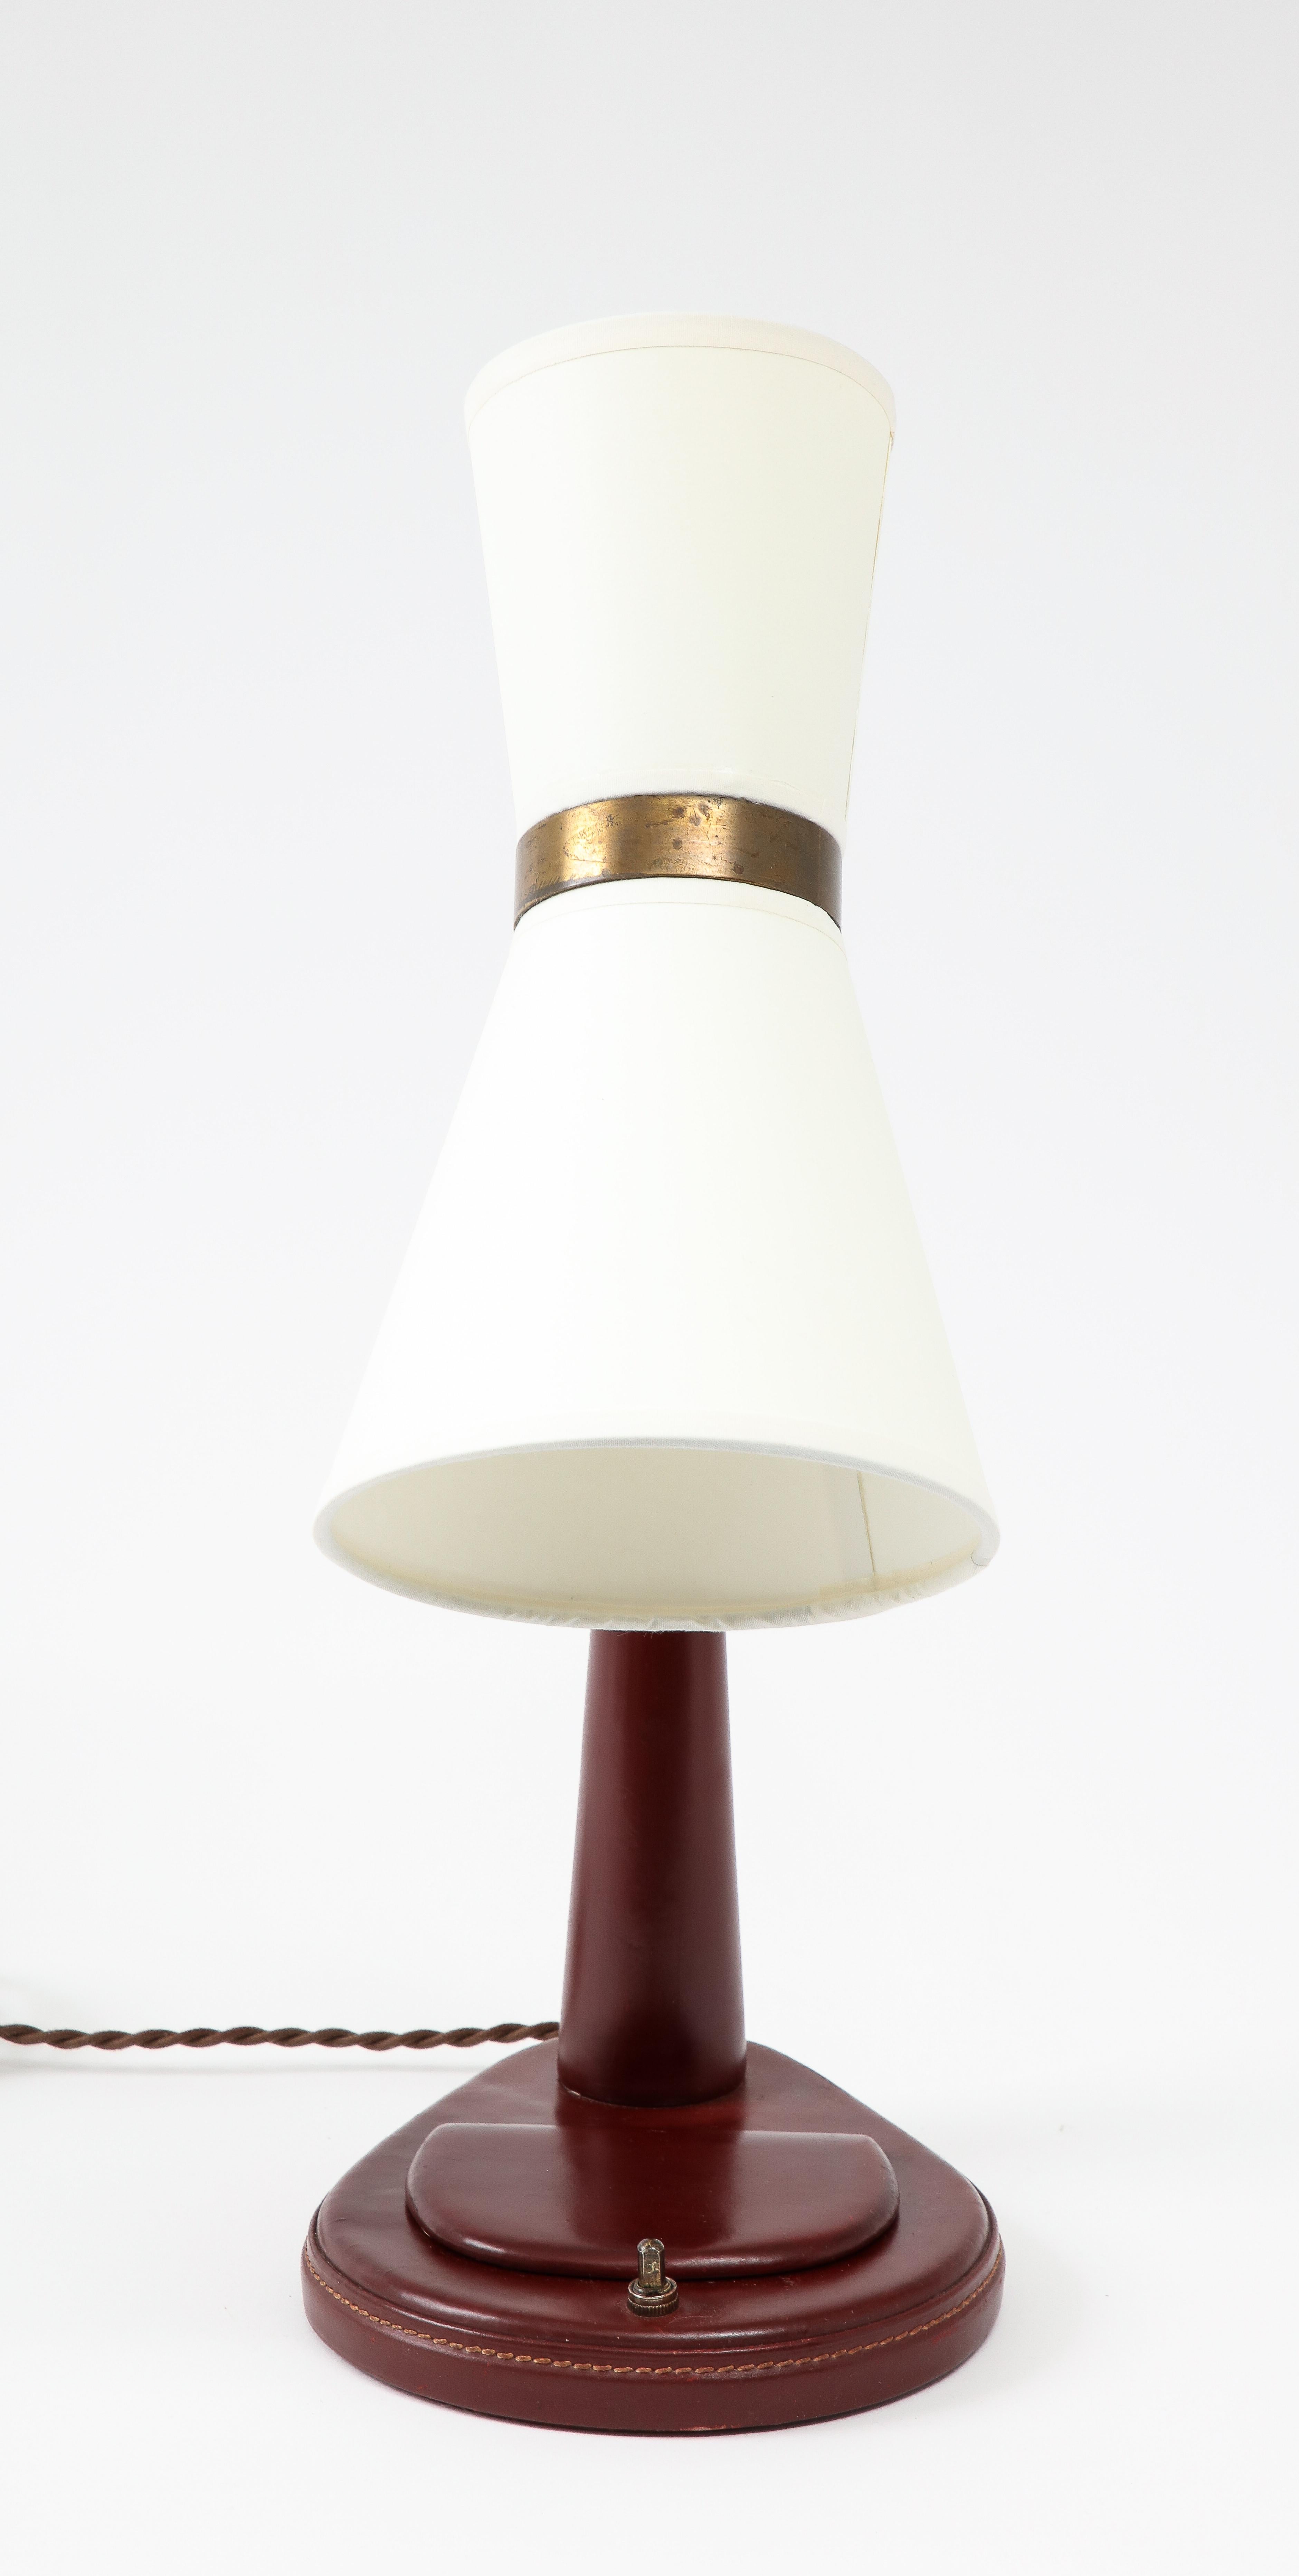 Brass Lancel Burgundy Leather Desk Lamp after Adnet, France 1960's For Sale